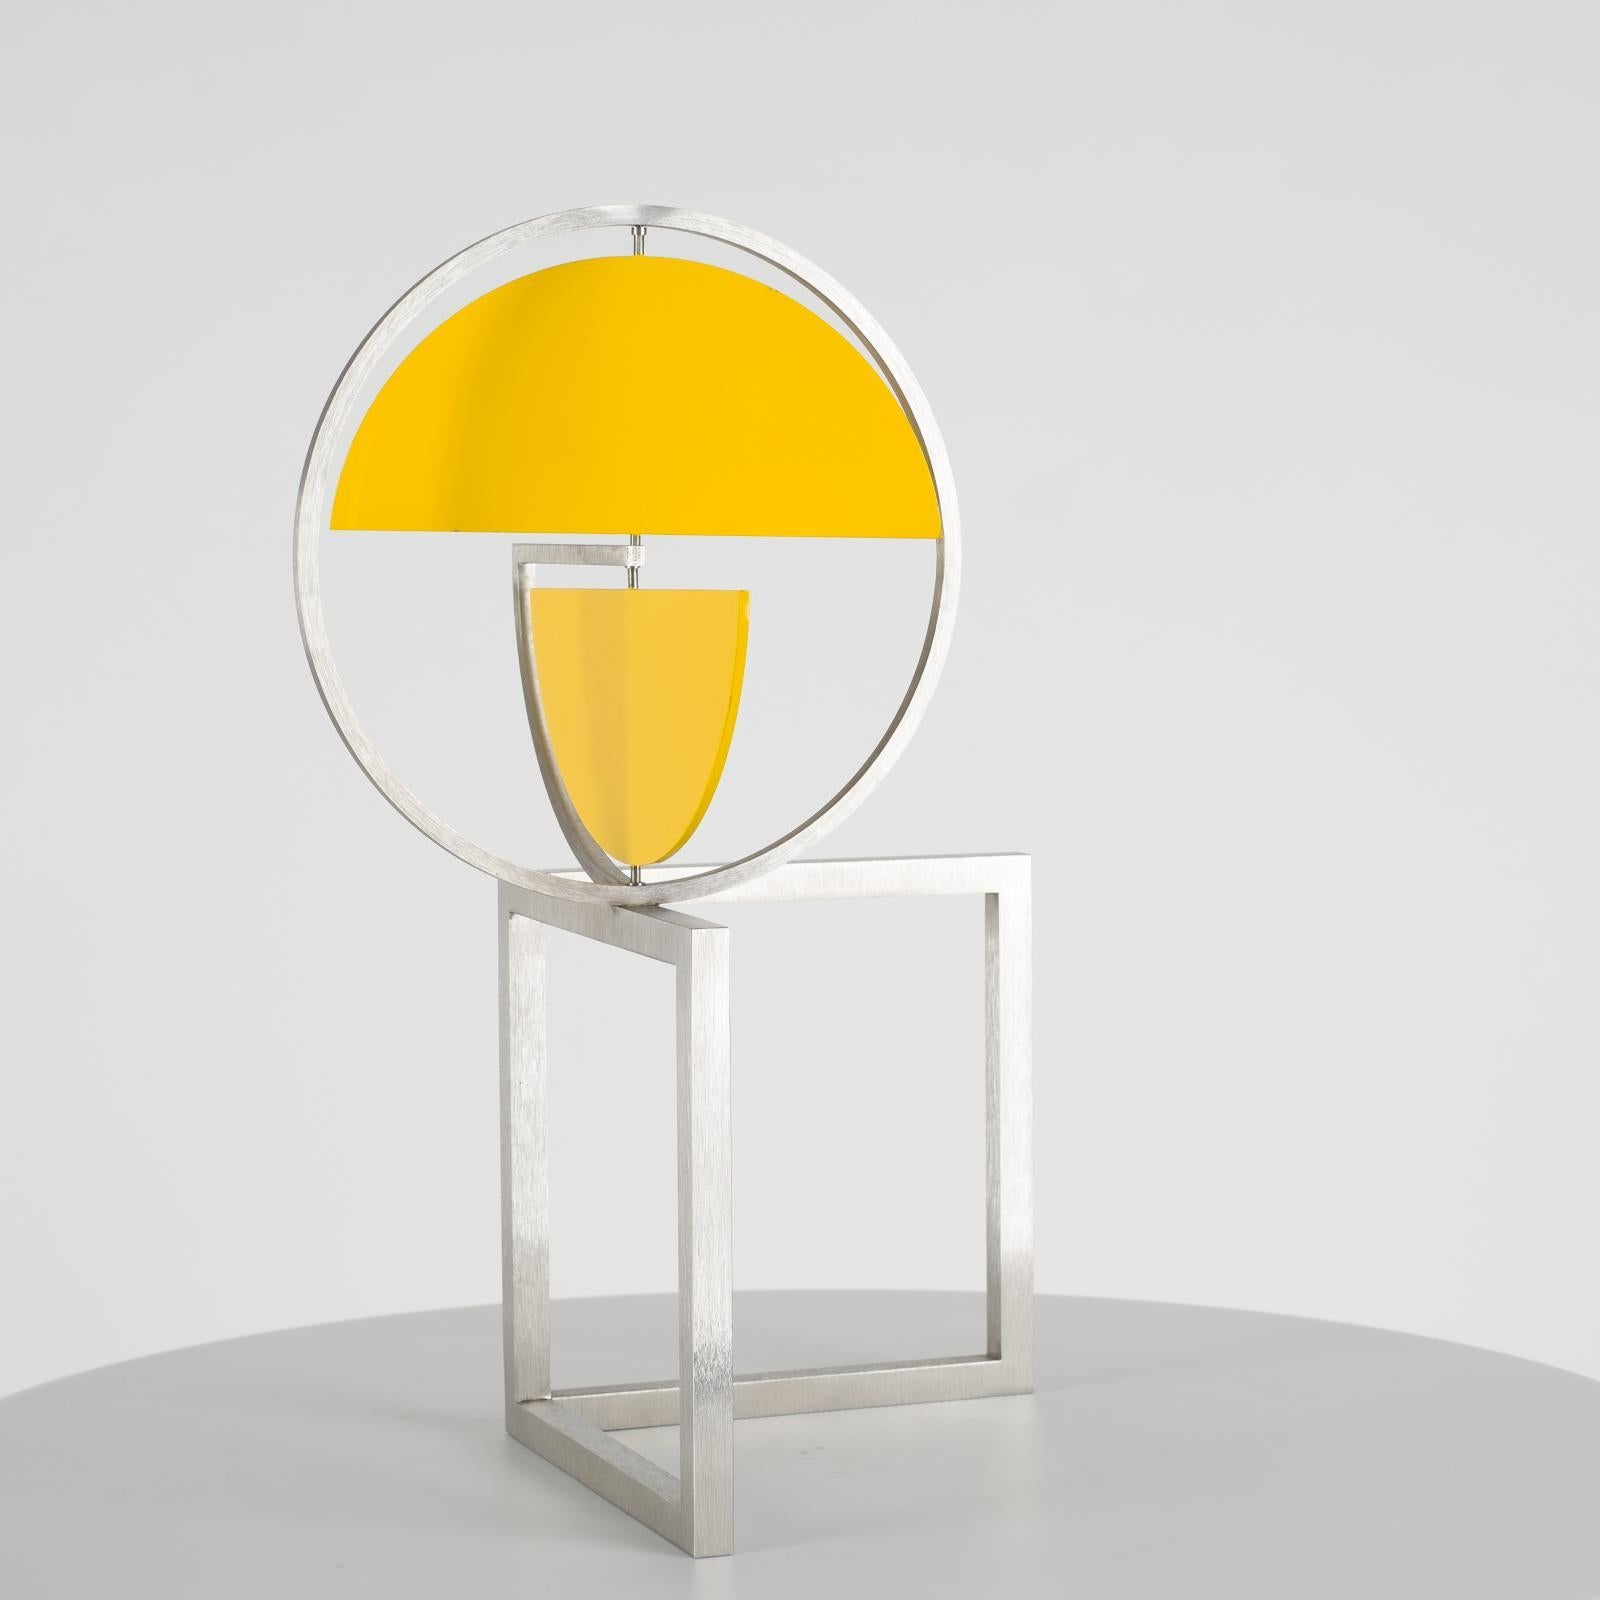 Disc jaune sur deux carrés, sculpture cinétique - Sculpture de Roger Phillips